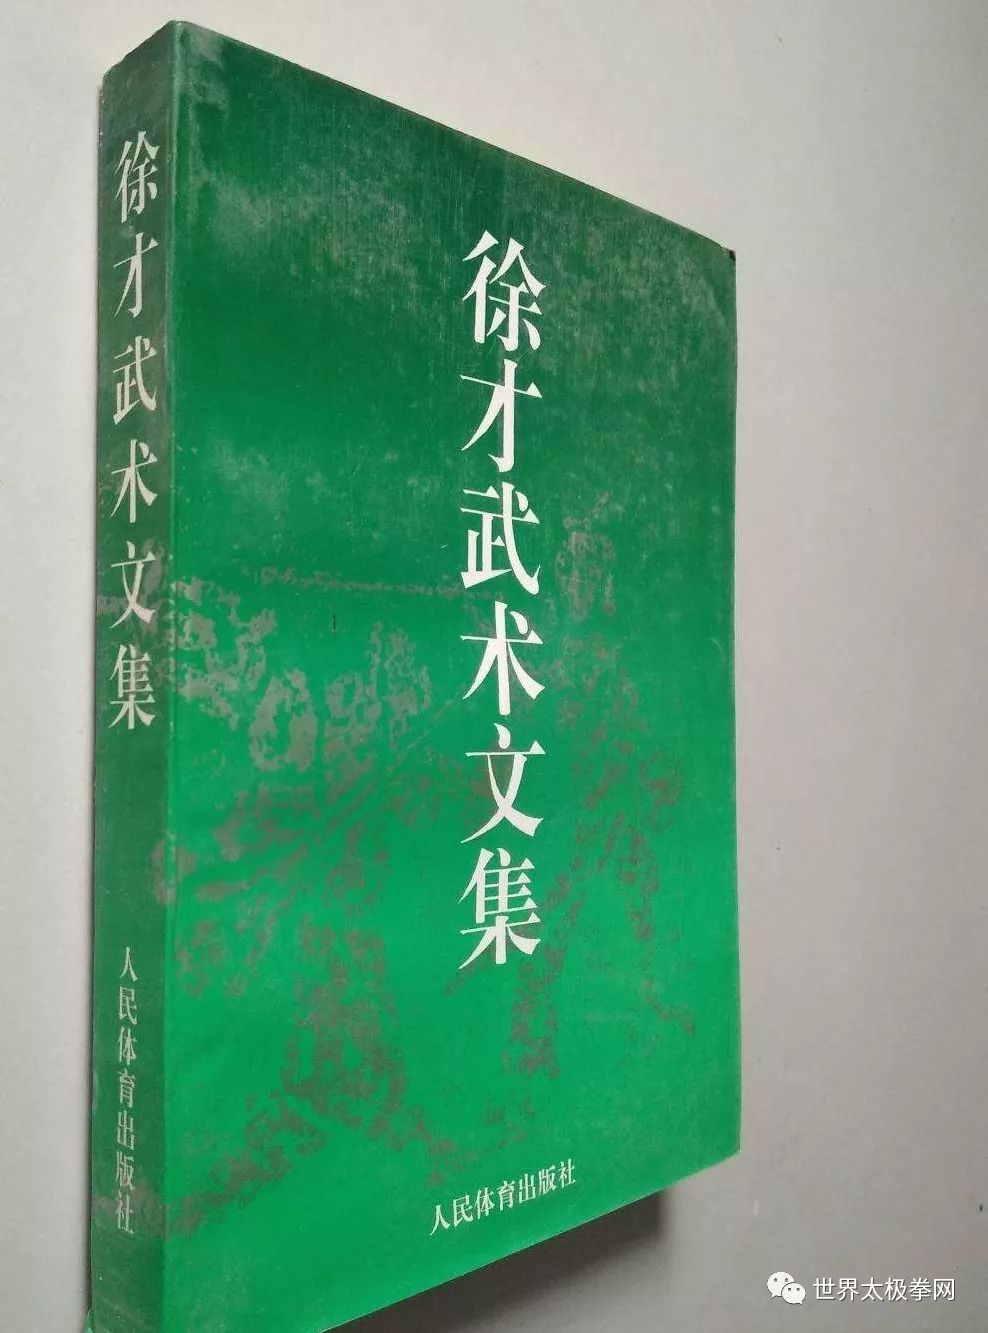 1995年出版《徐才文集》